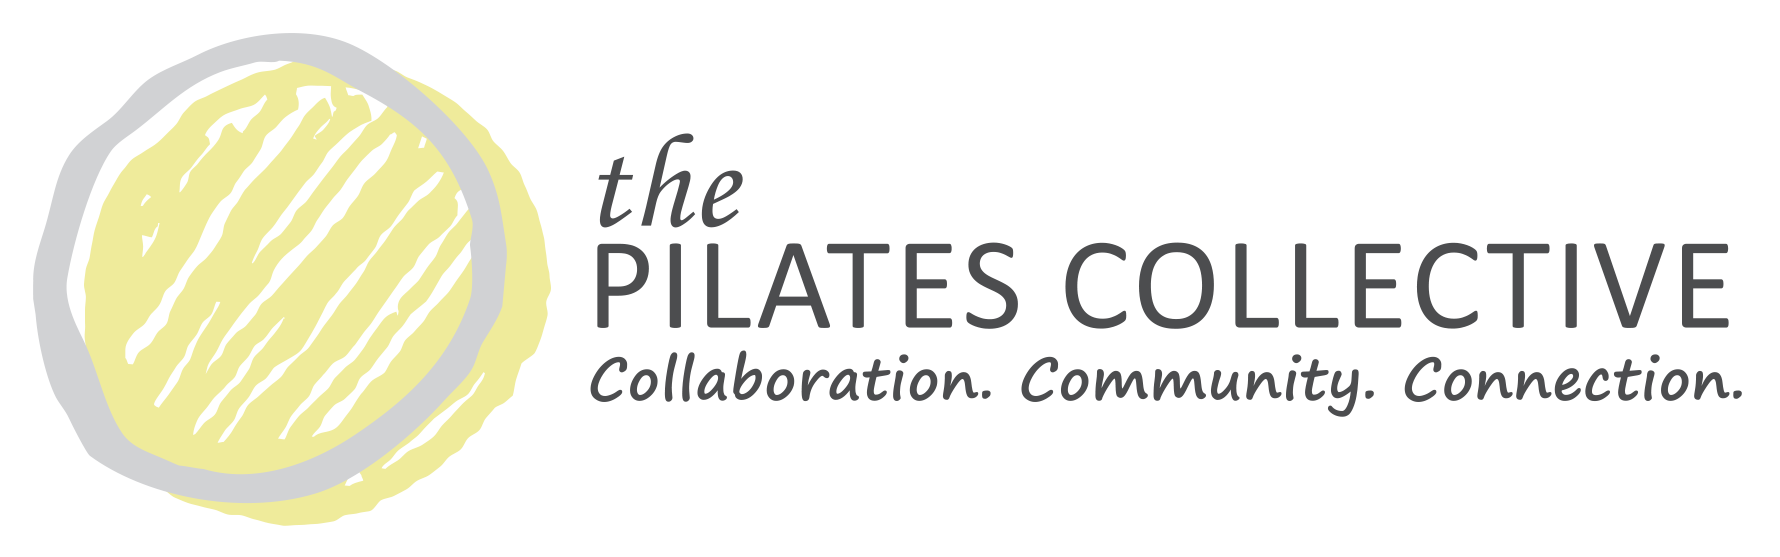 Pilates Collective Denver